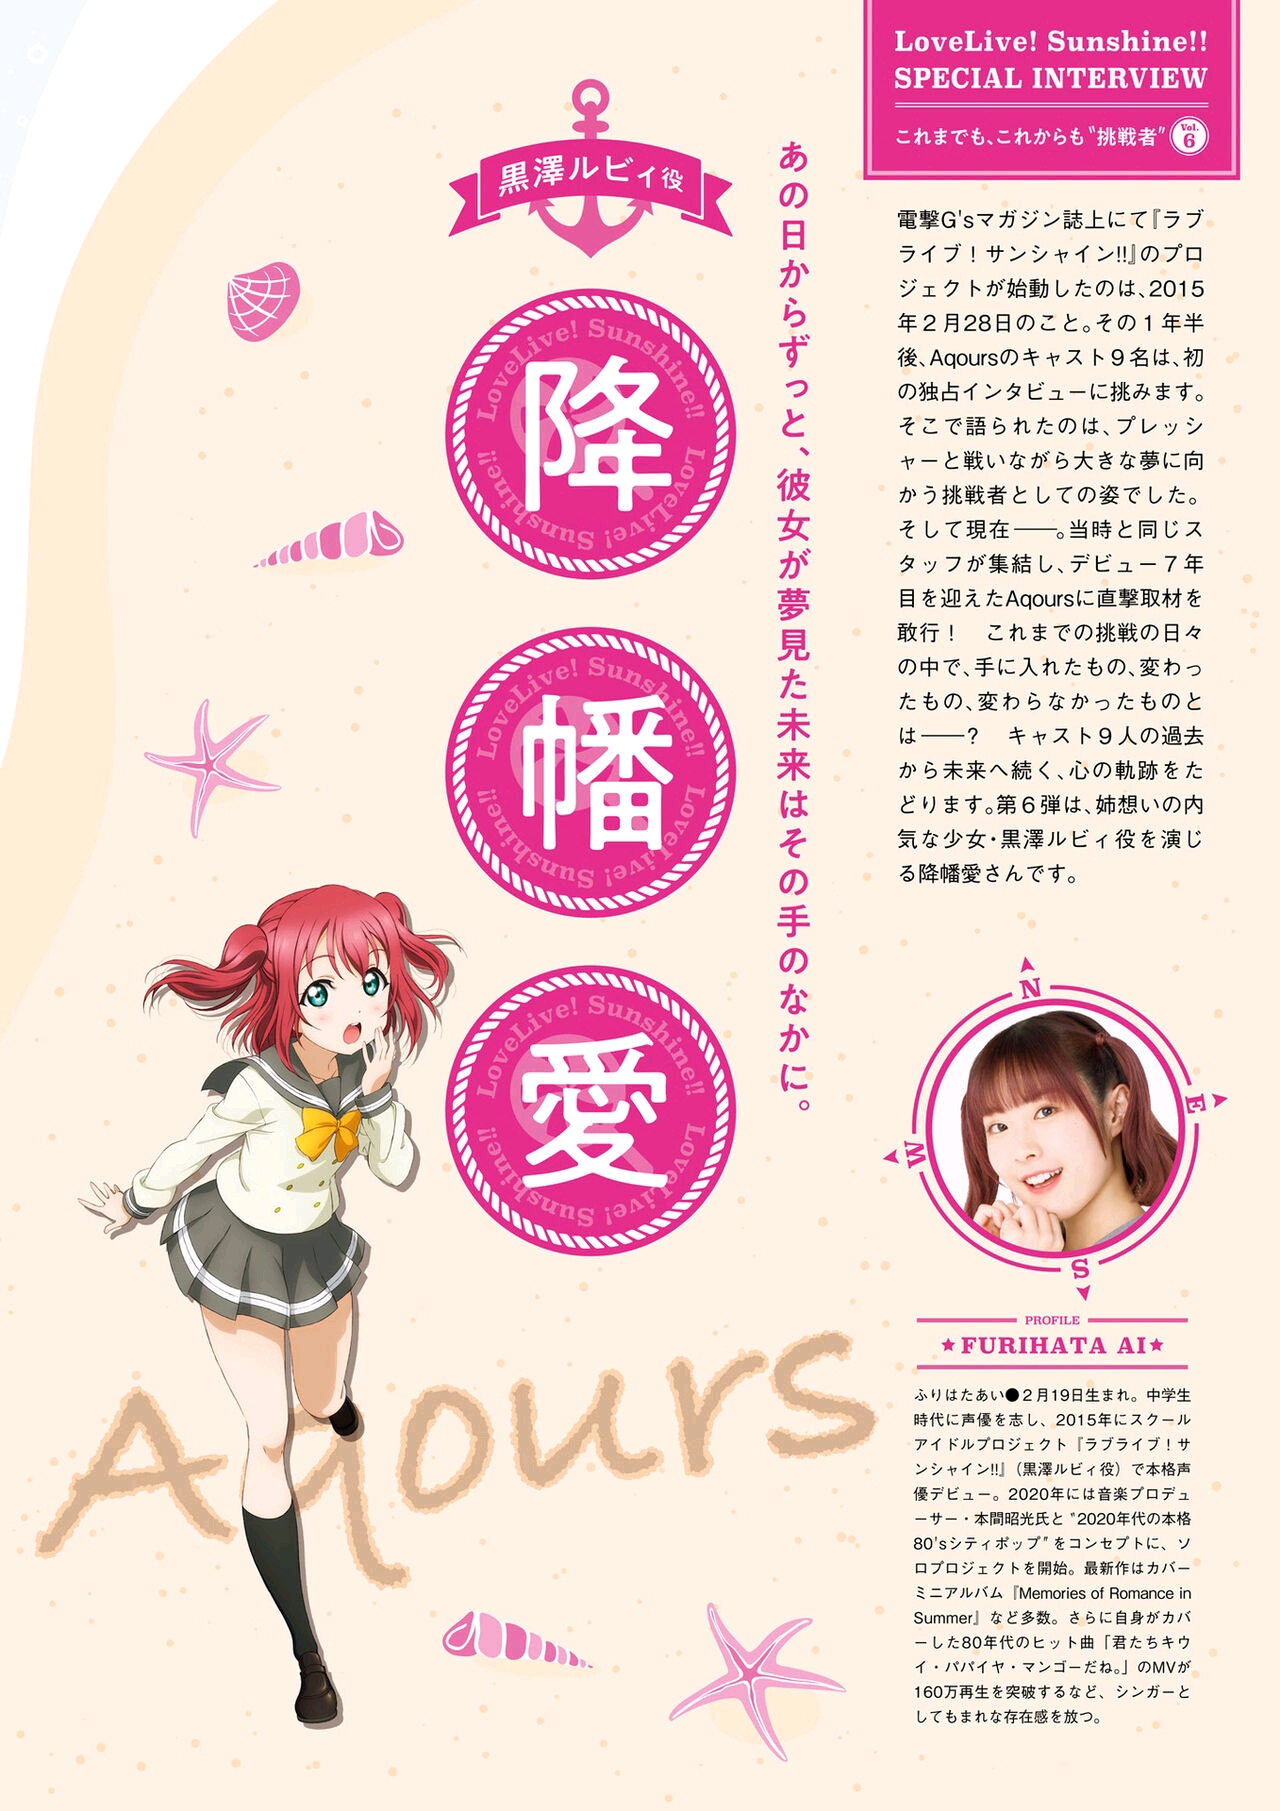 Aqours Magazine Ruby